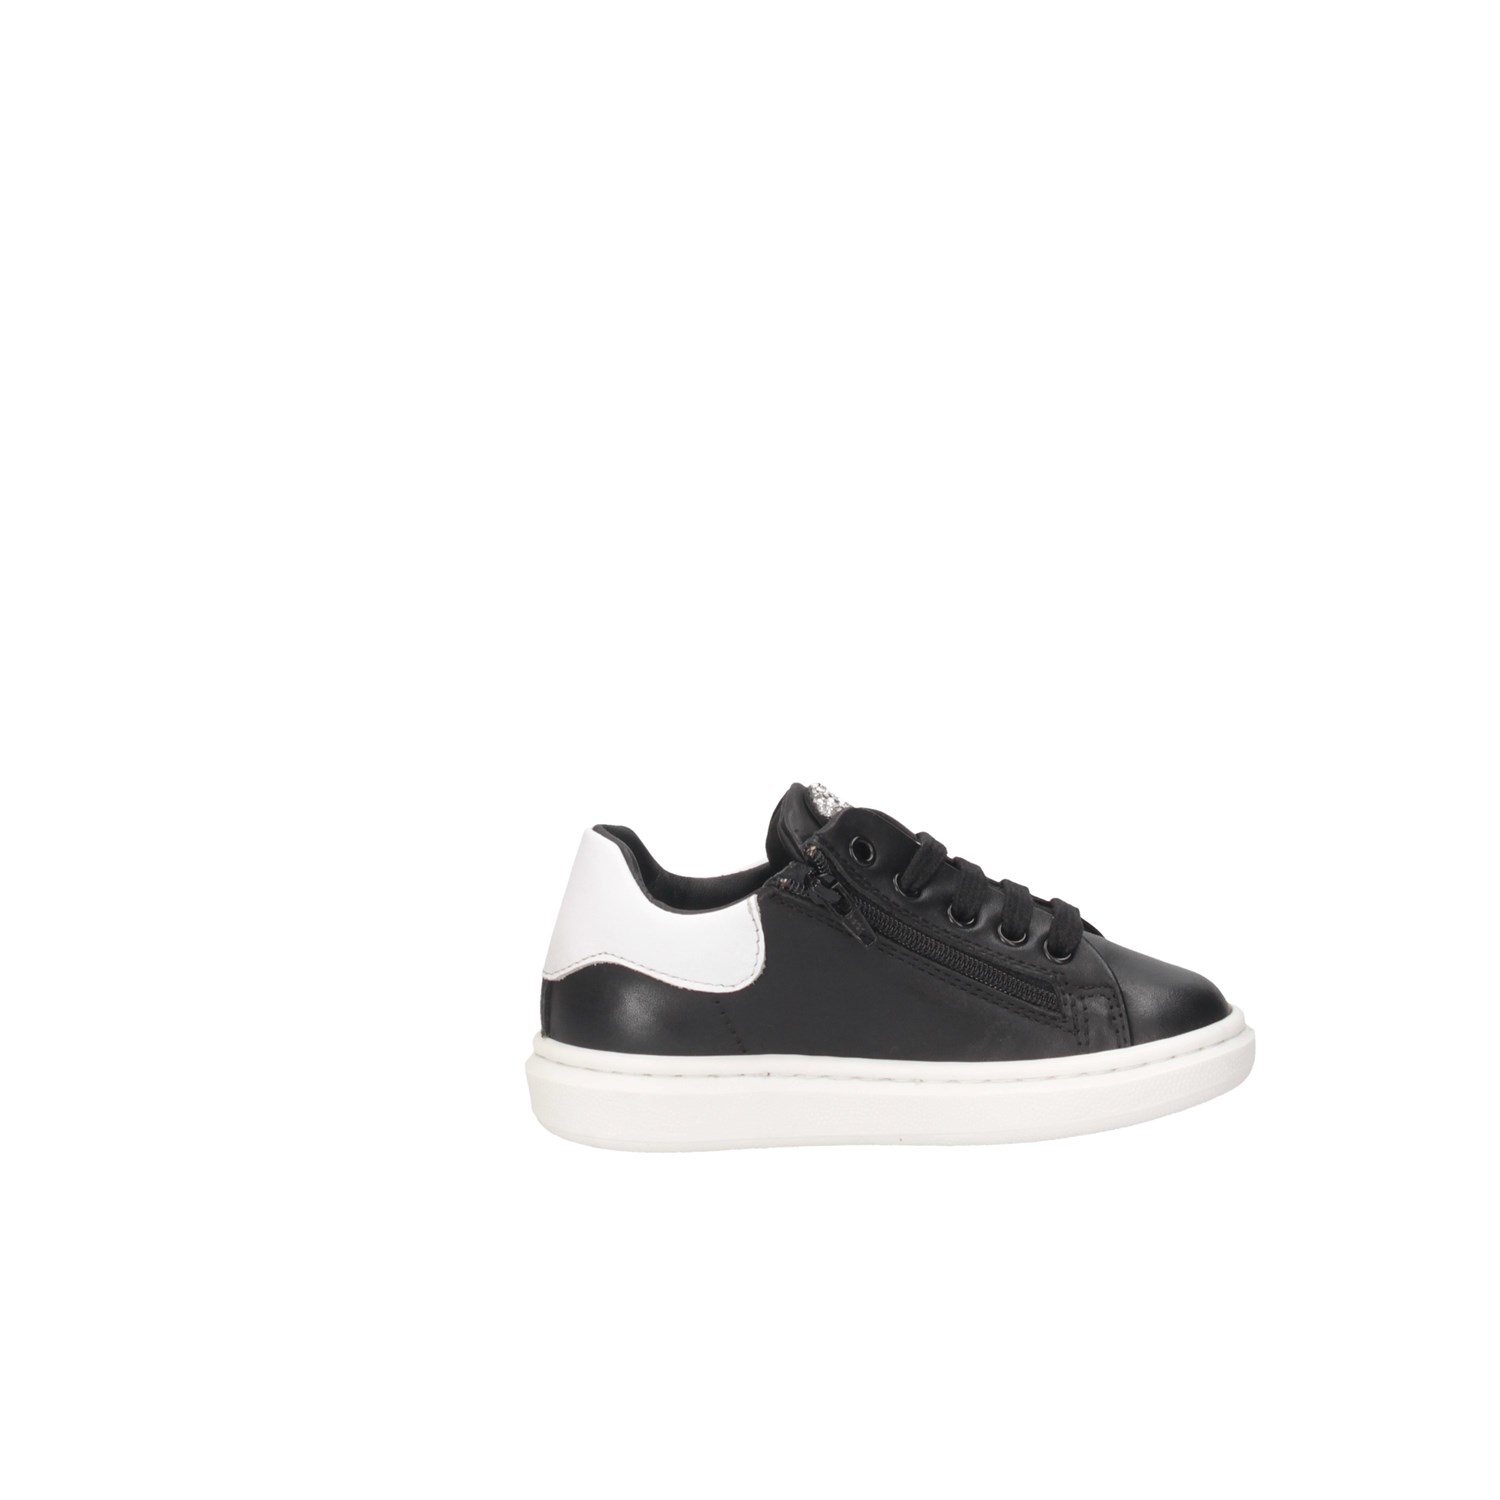 Florens J168236V Black / Silver Shoes Child 